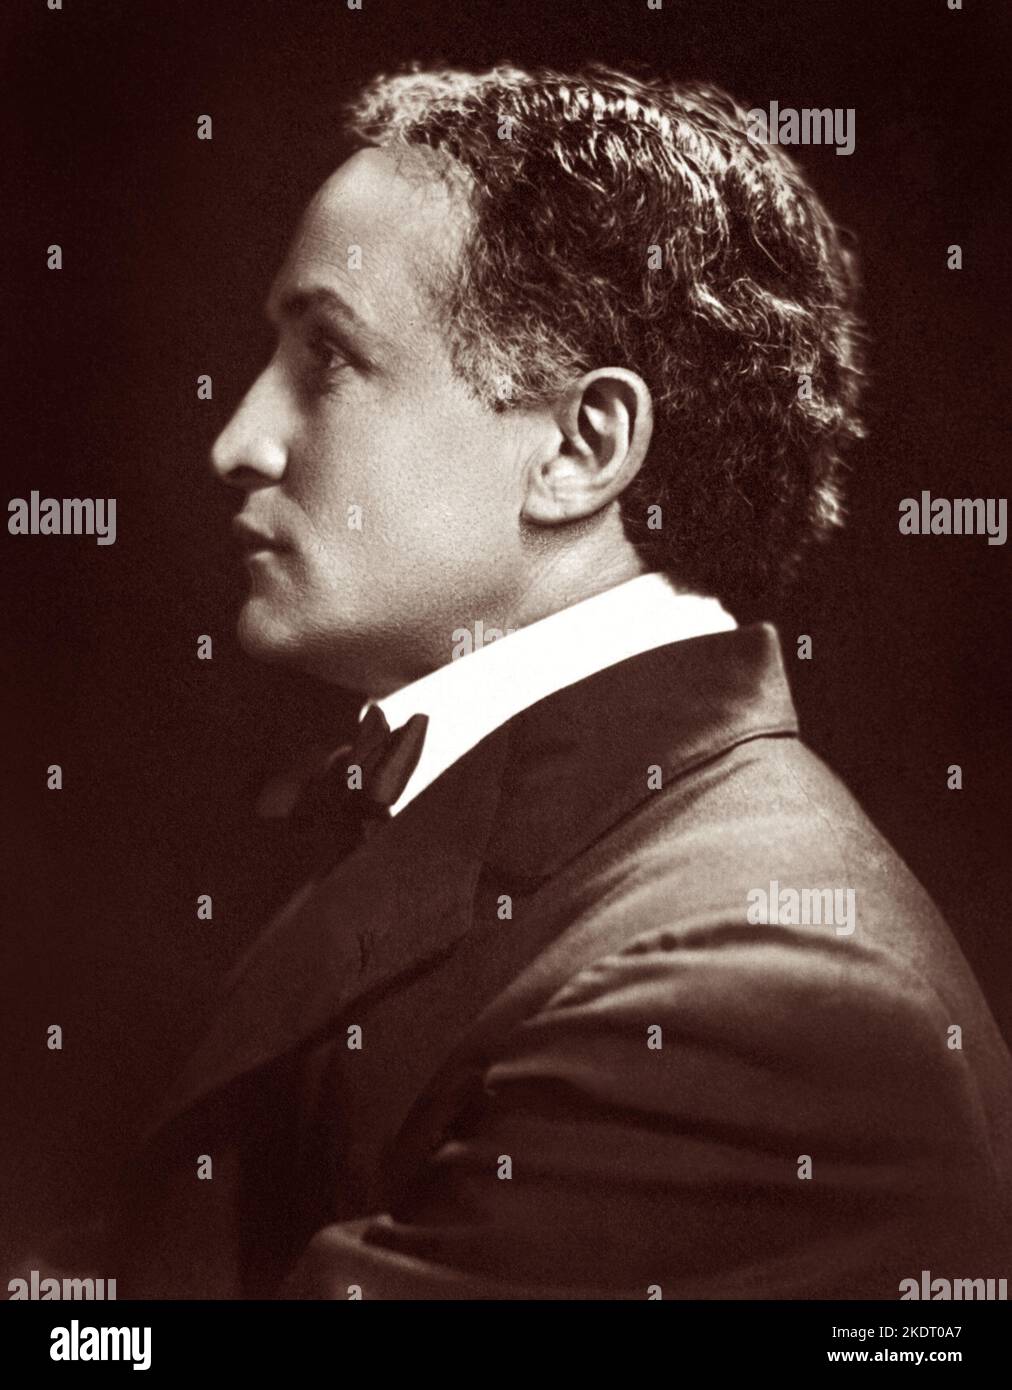 Harry Houdini (1874-1926), ilusionista húngaro-estadounidense y artista escapista, en un retrato de perfil, c1920. Foto de stock